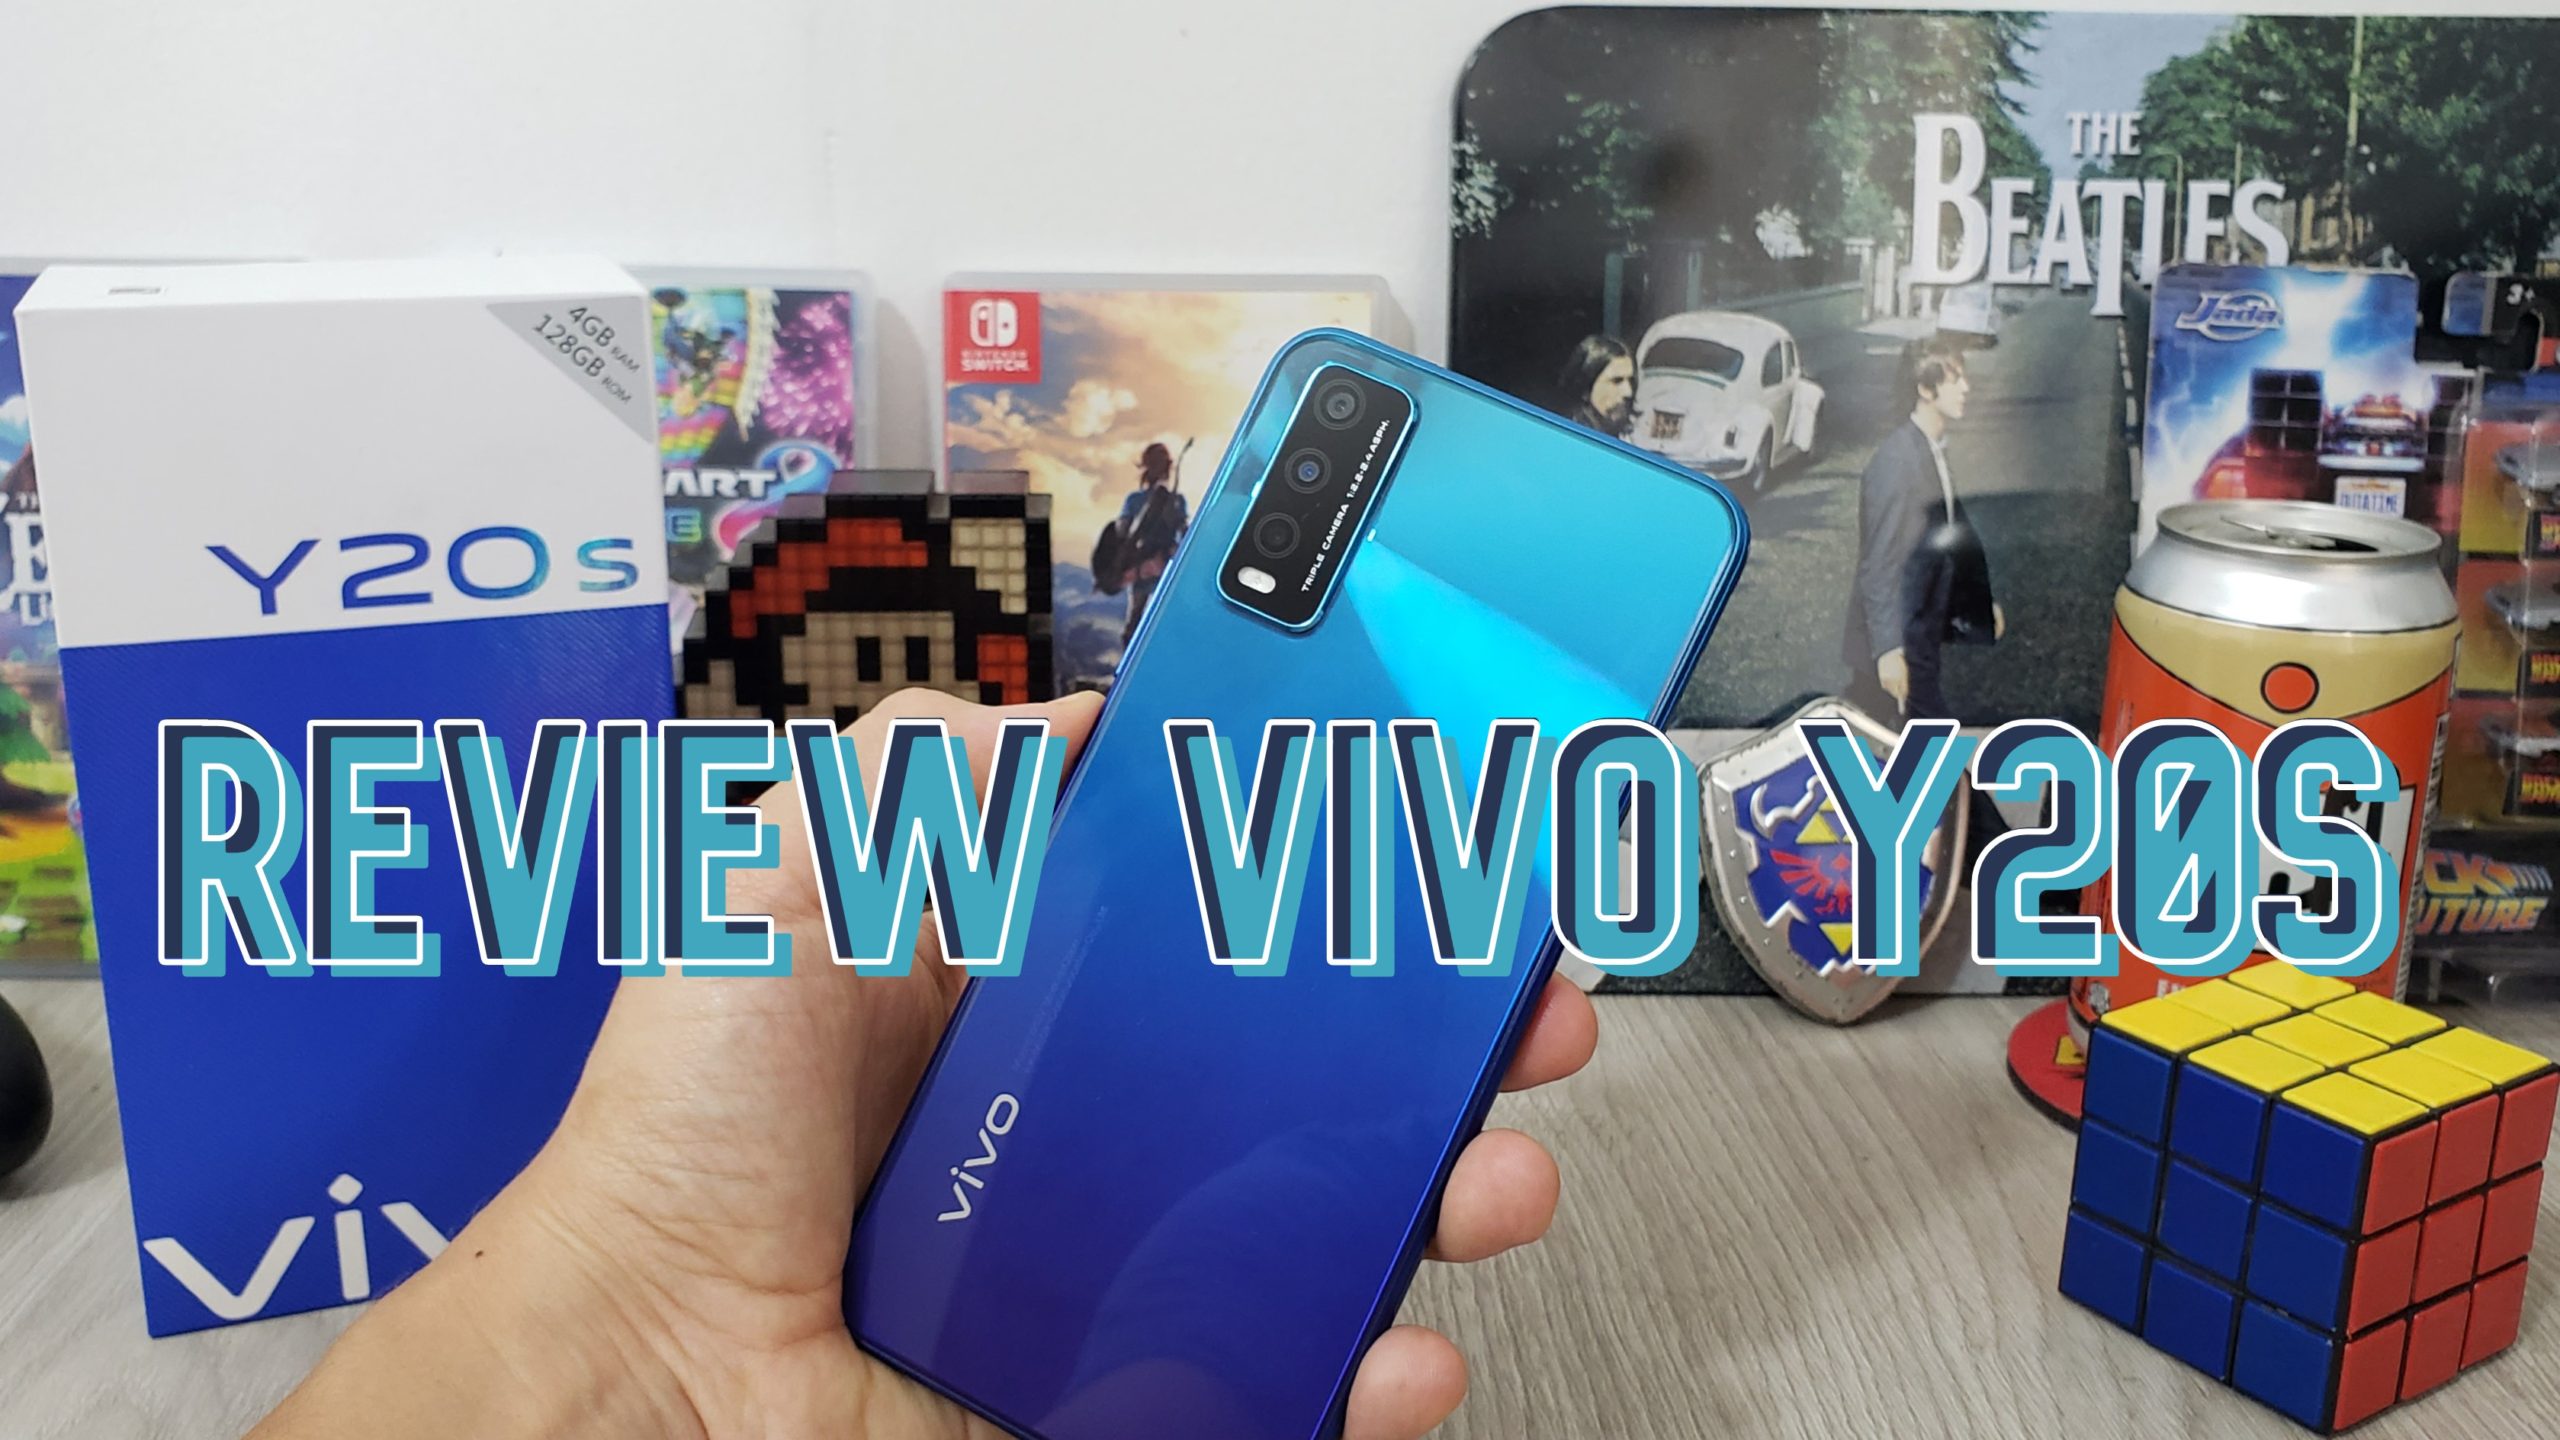 review Vivo Y20s